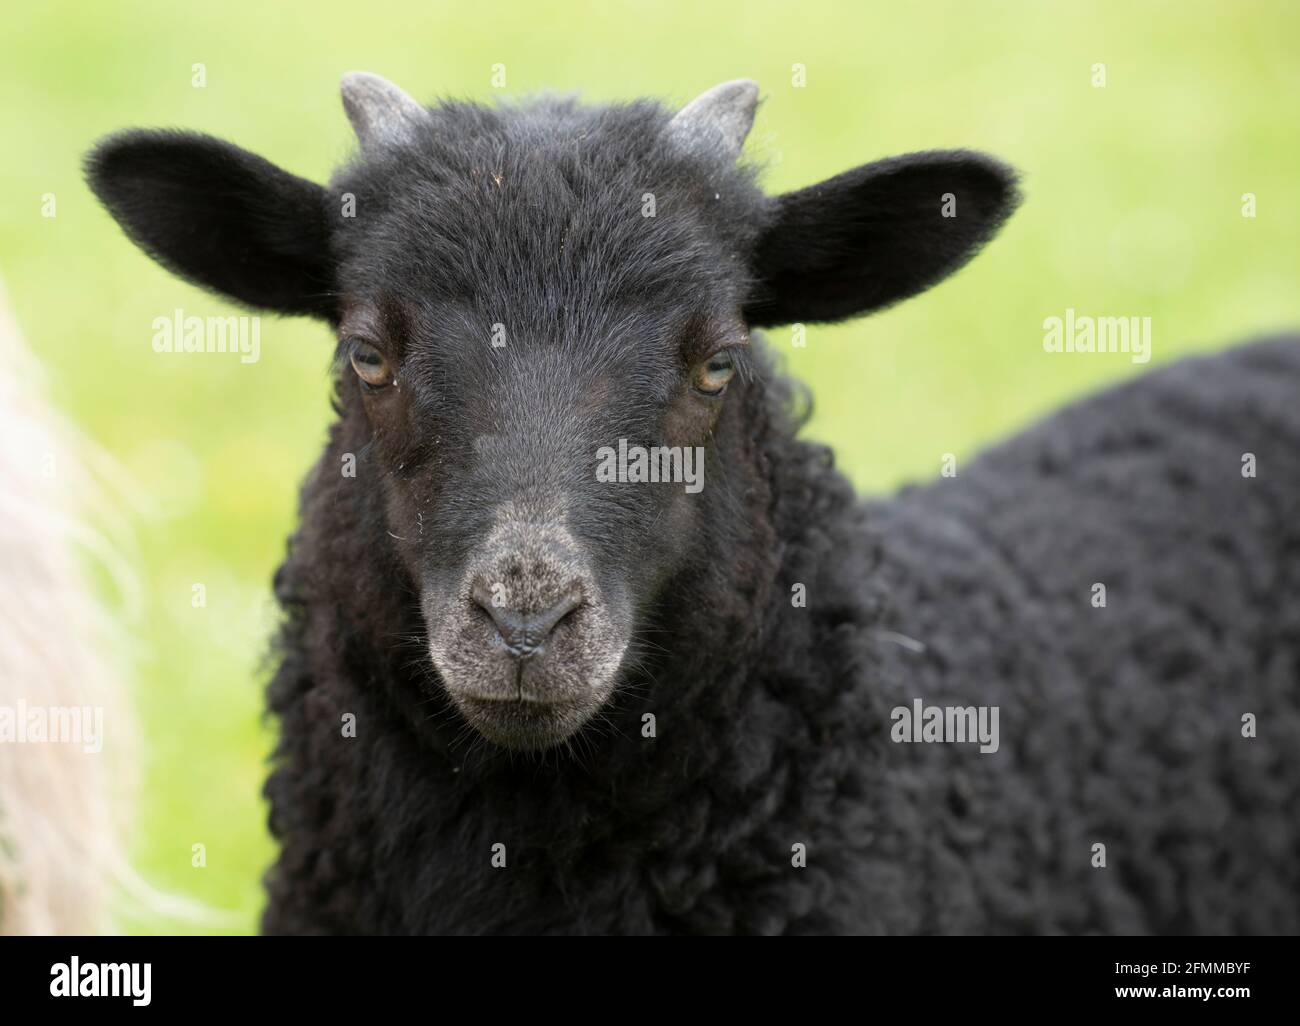 Ritratto e primo piano di un agnello nero, un 'Heidschnuucke', con pelliccia riccia e piccole corna Foto Stock